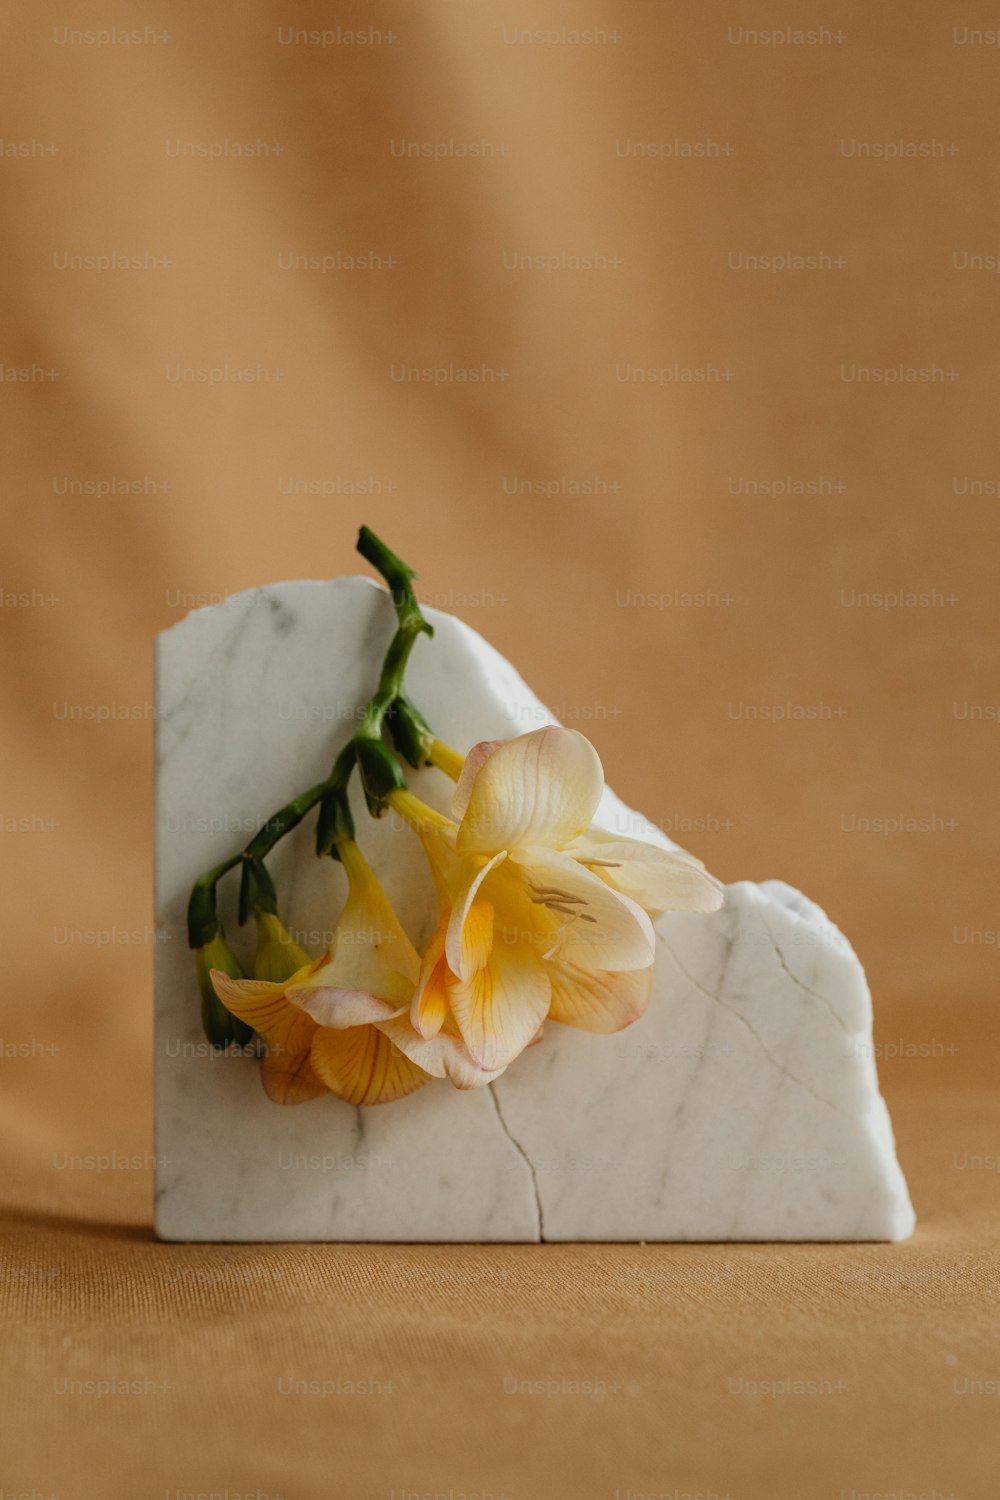 黄色い花が描かれた白い大理石のブロック